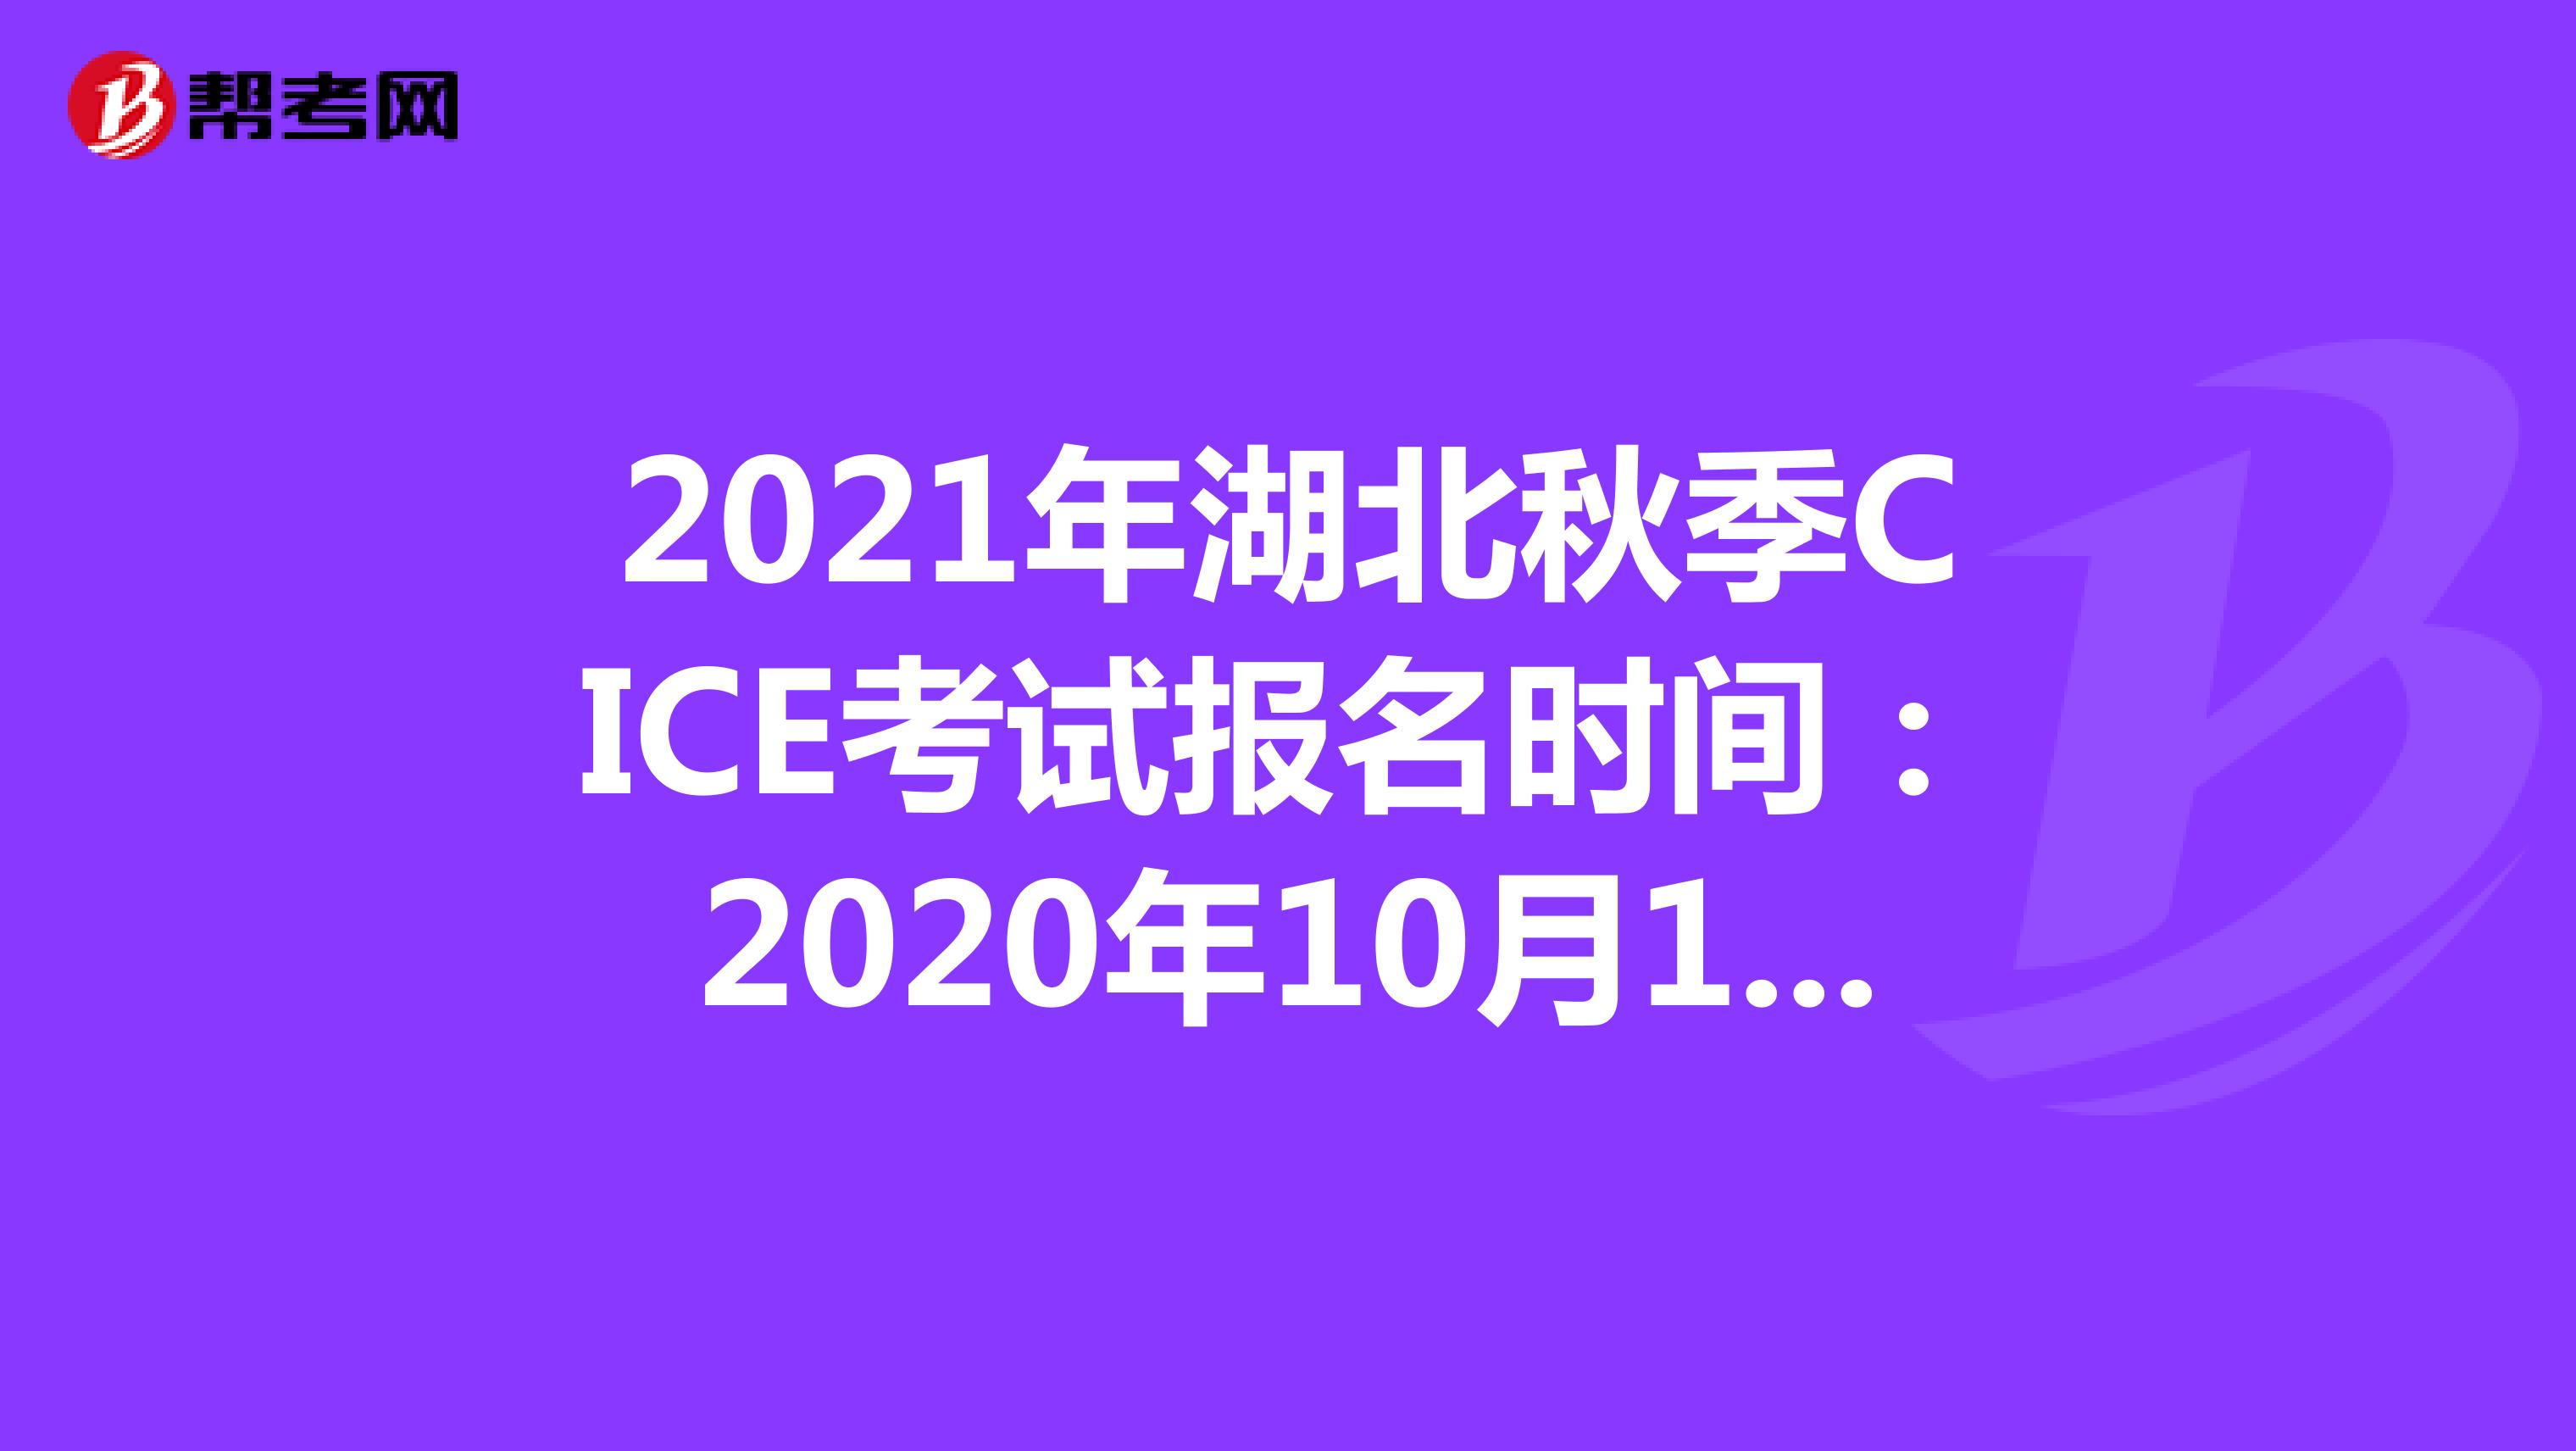 2021年湖北秋季CICE考试报名时间：2020年10月19日-2021年8月31日